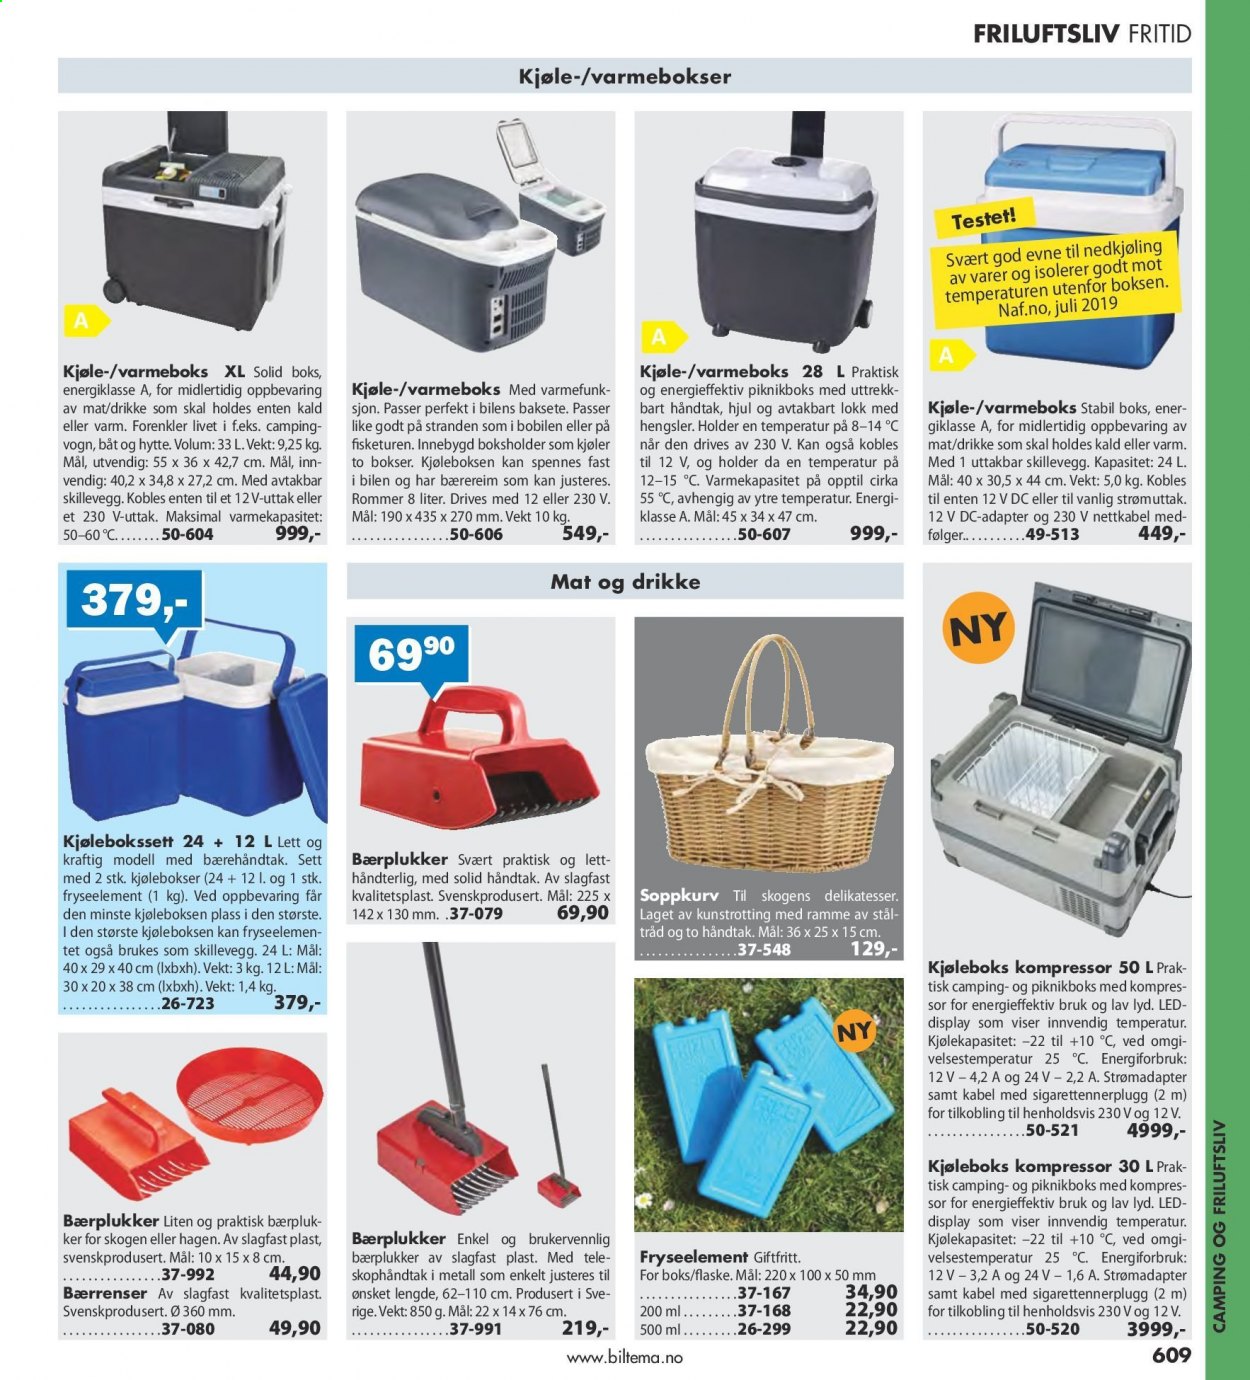 thumbnail - Kundeavis Biltema - Produkter fra tilbudsaviser - kjøleboks. Side 609.